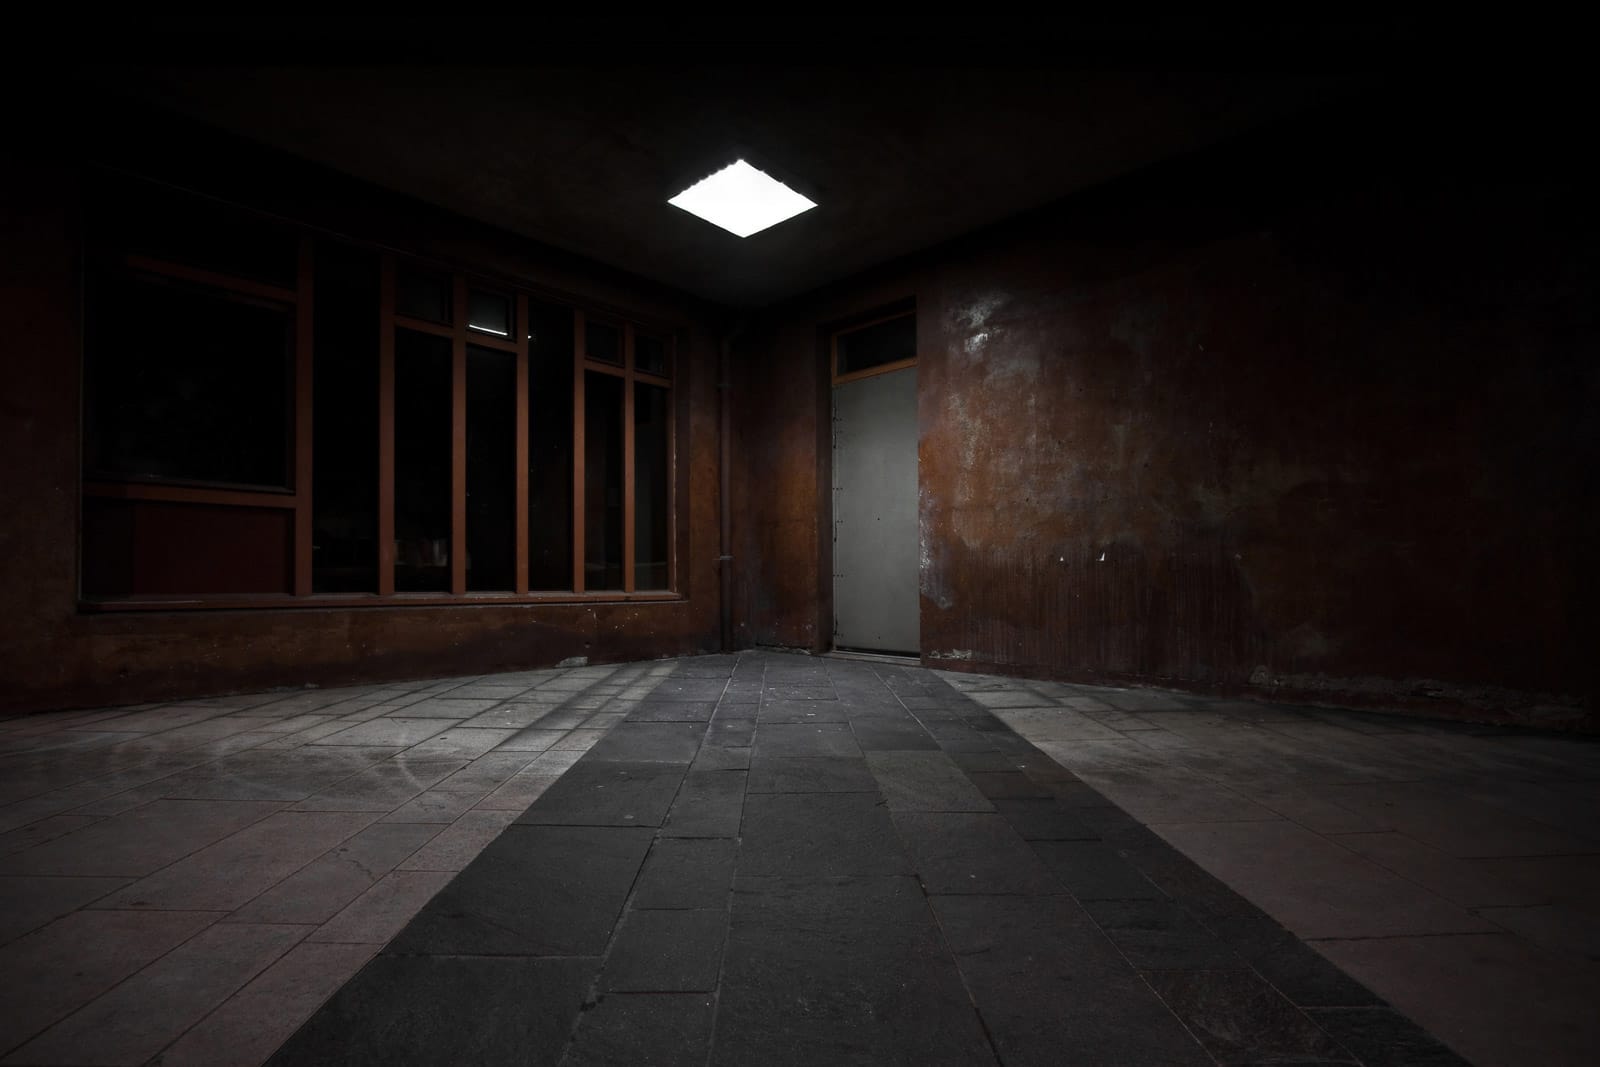 Behind that grey door - Photographie urbaine de nuit